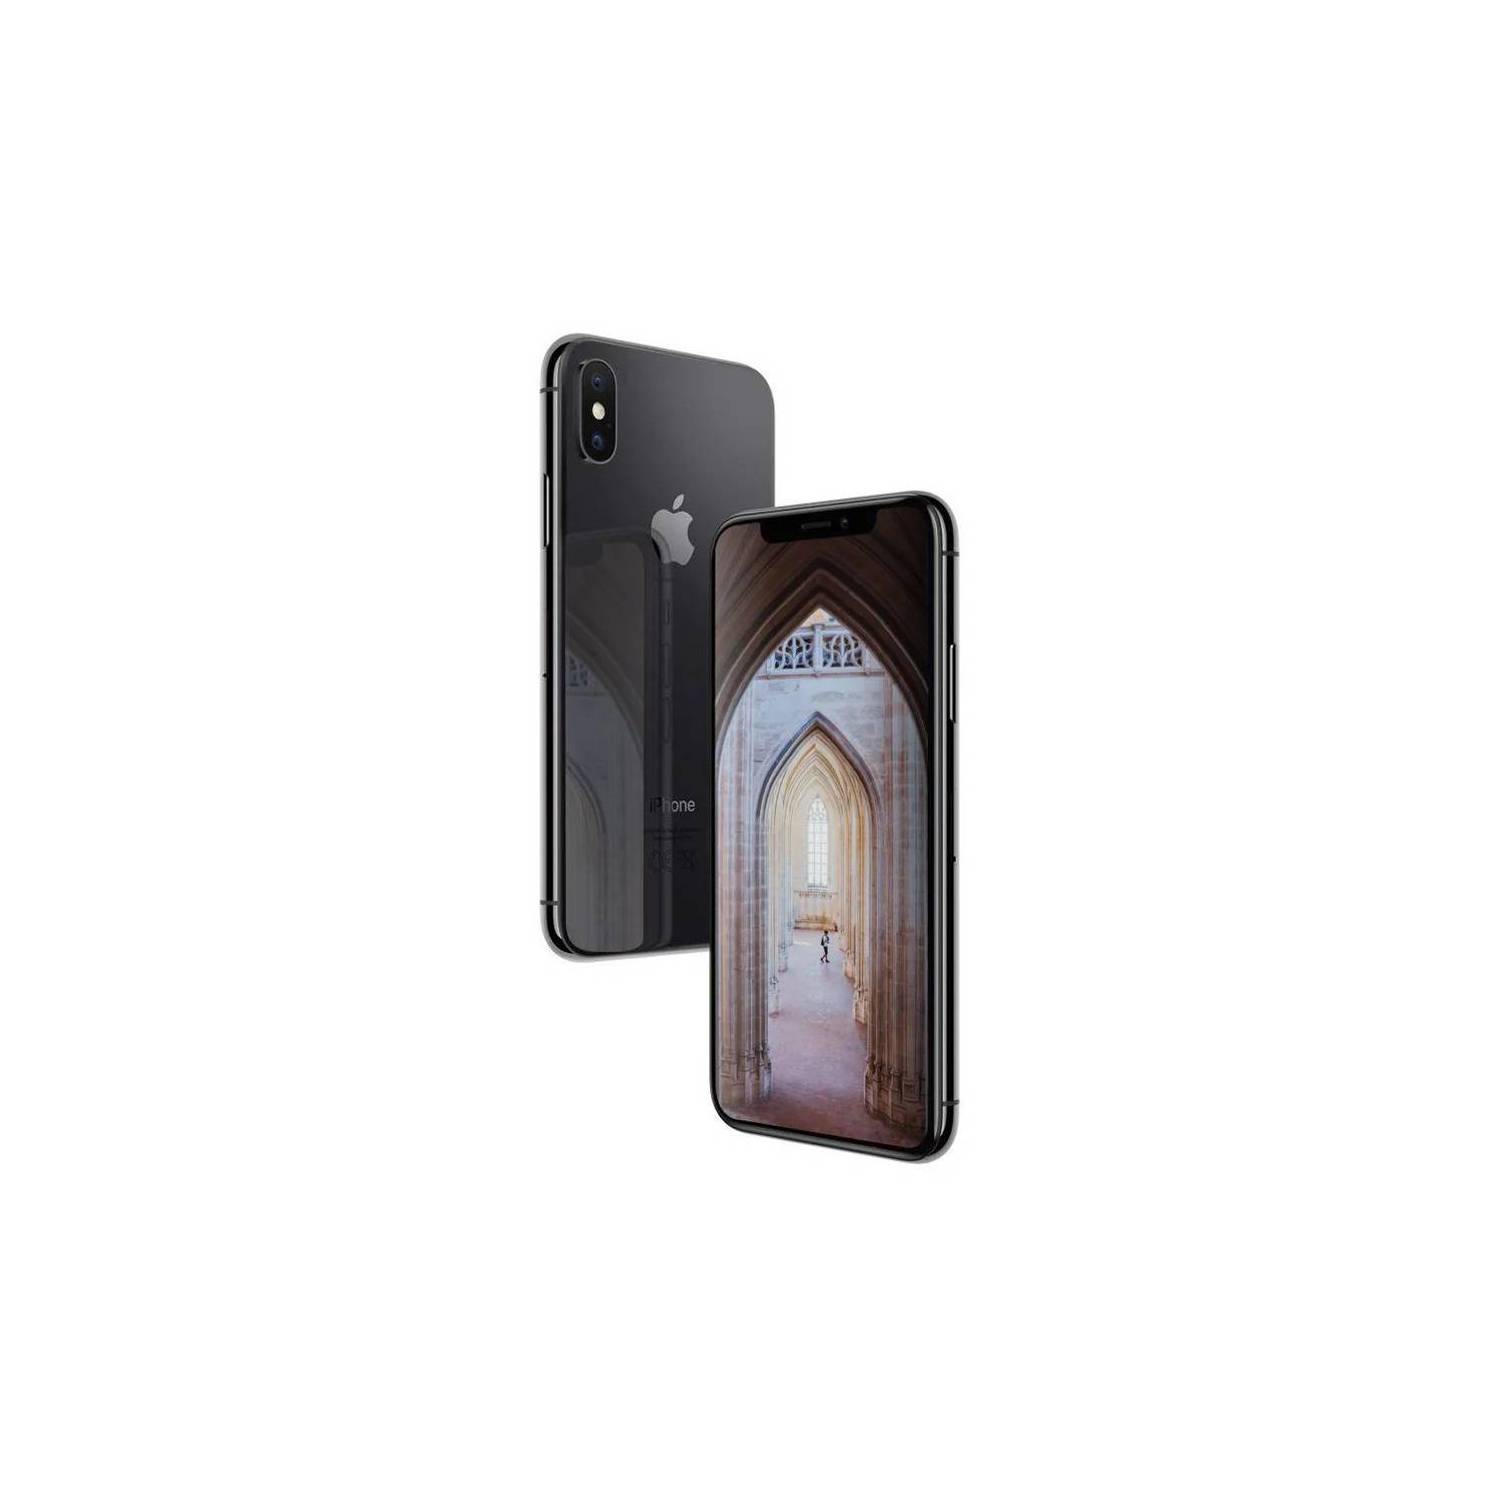 Celular Iphone X 64gb Color Negro Reacondicionado + Base Cargador